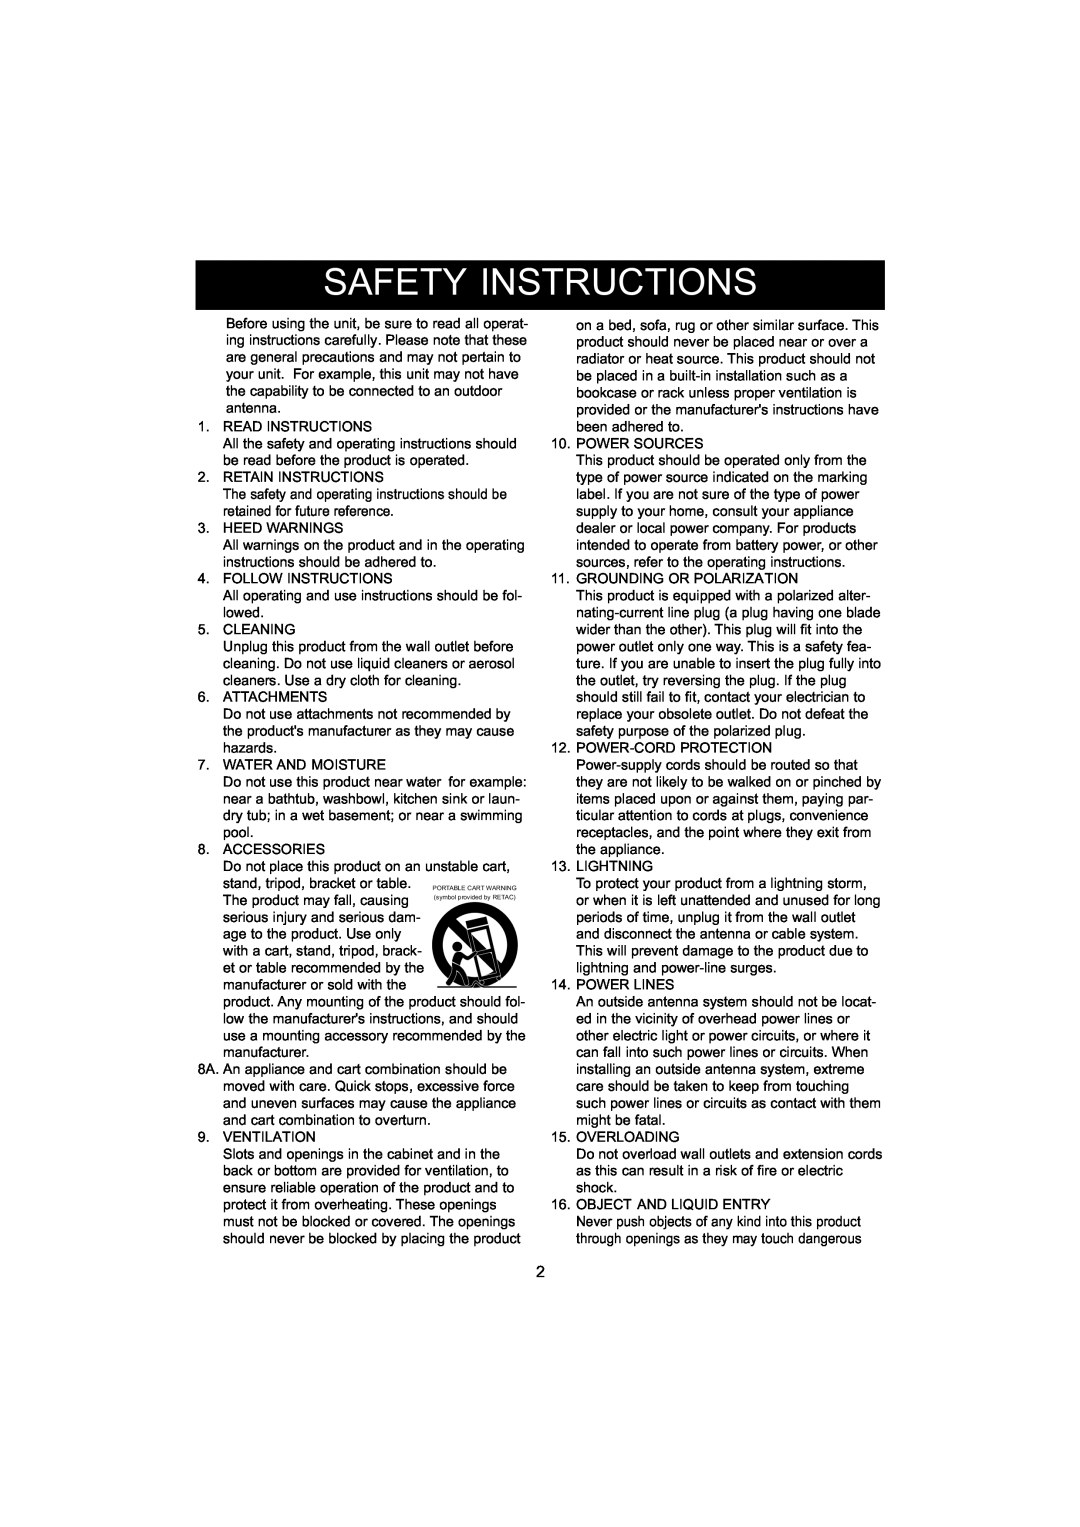 Jensen CD-545 instruction manual Safety Instructions 